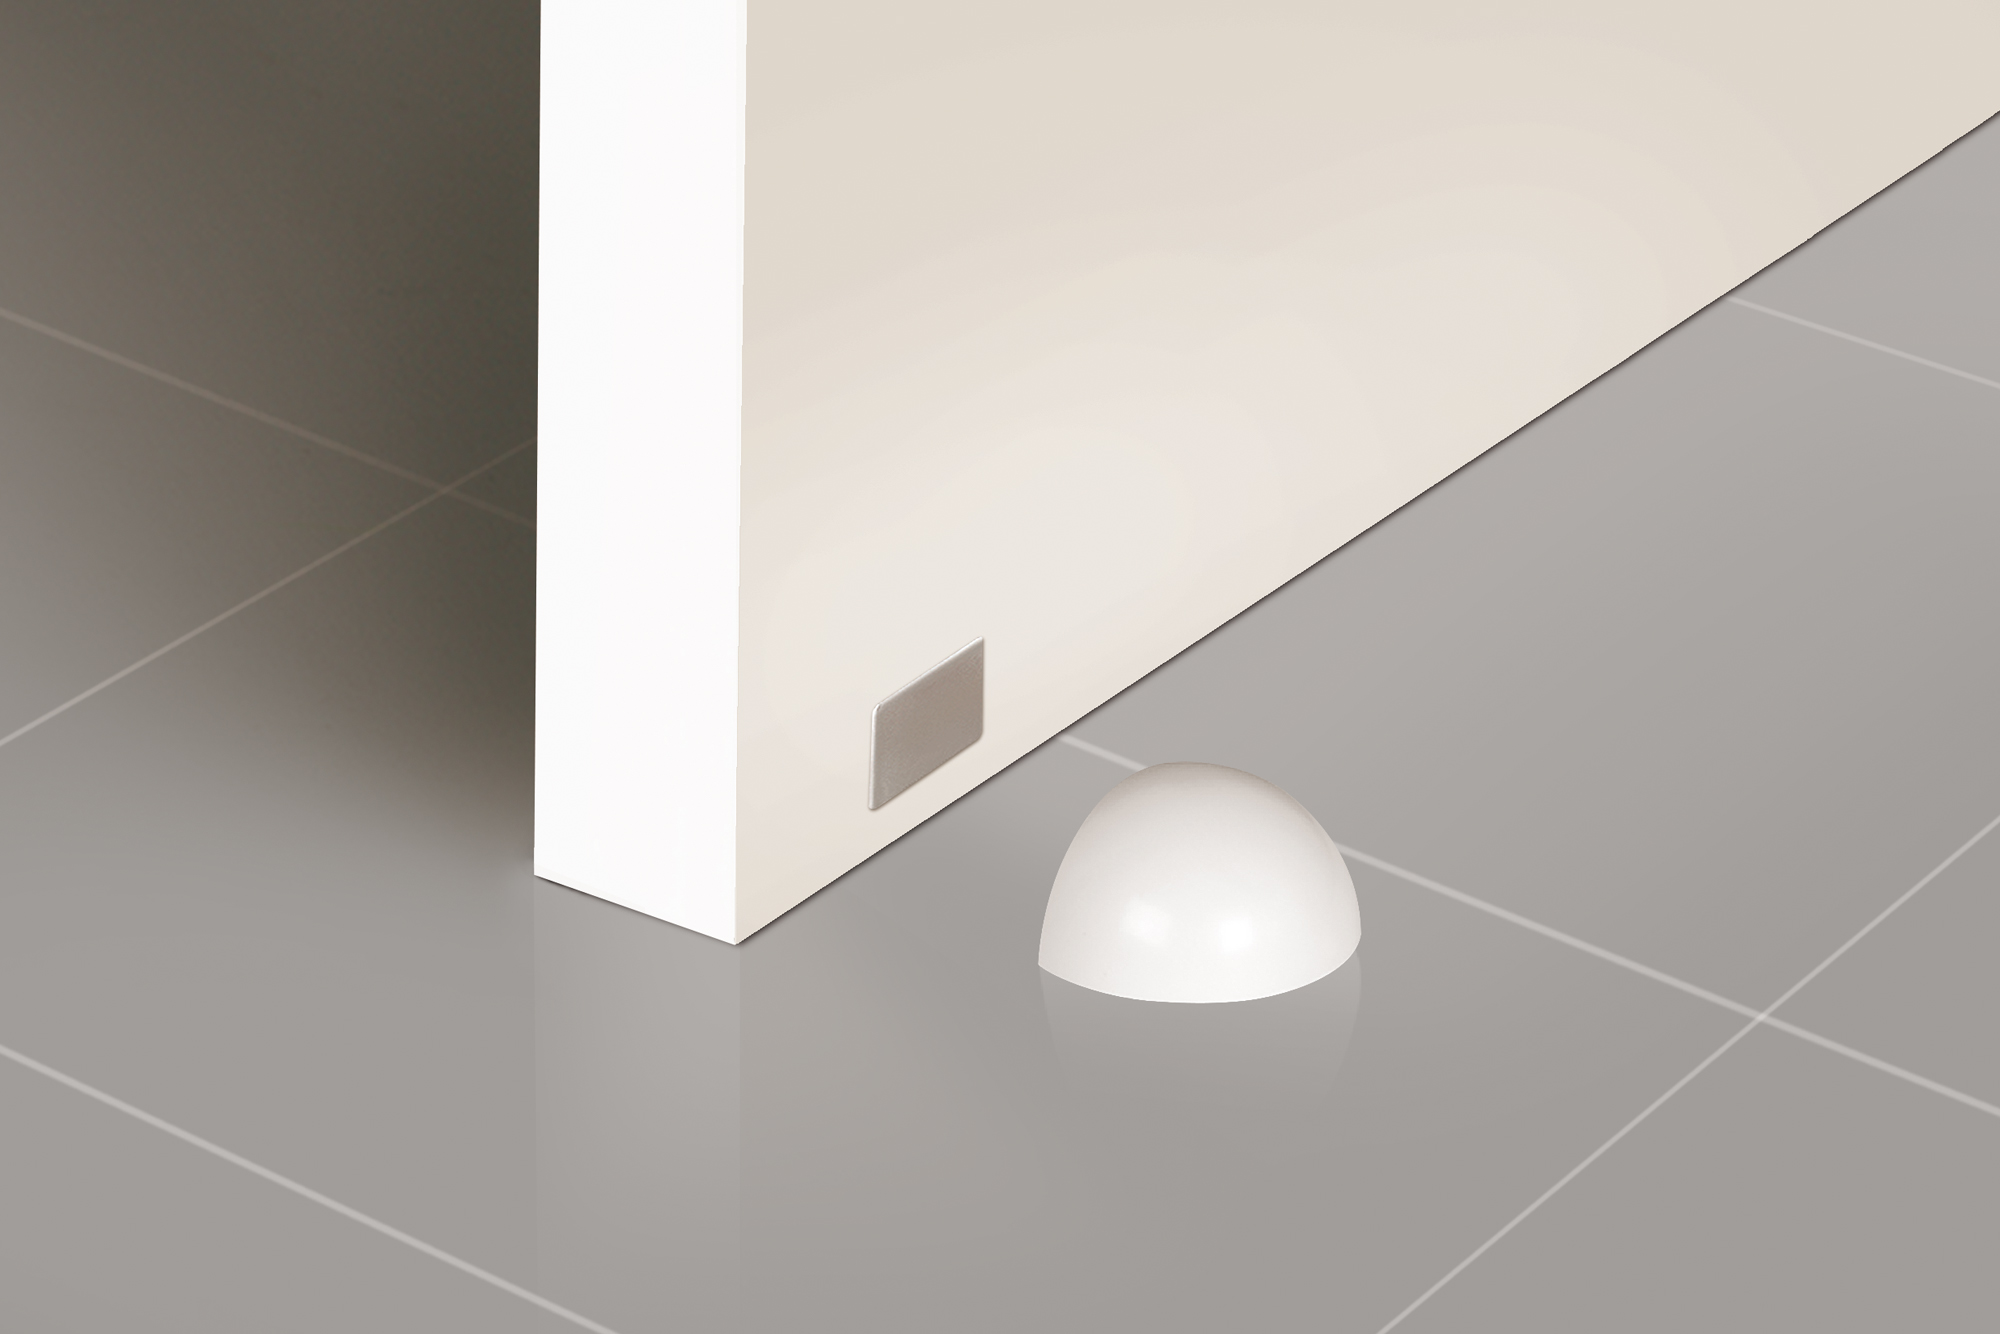 Retenedor de puerta con imán adhesivo con acabado blanco. Dimensiones: 51x39x26 mm - Ítem1